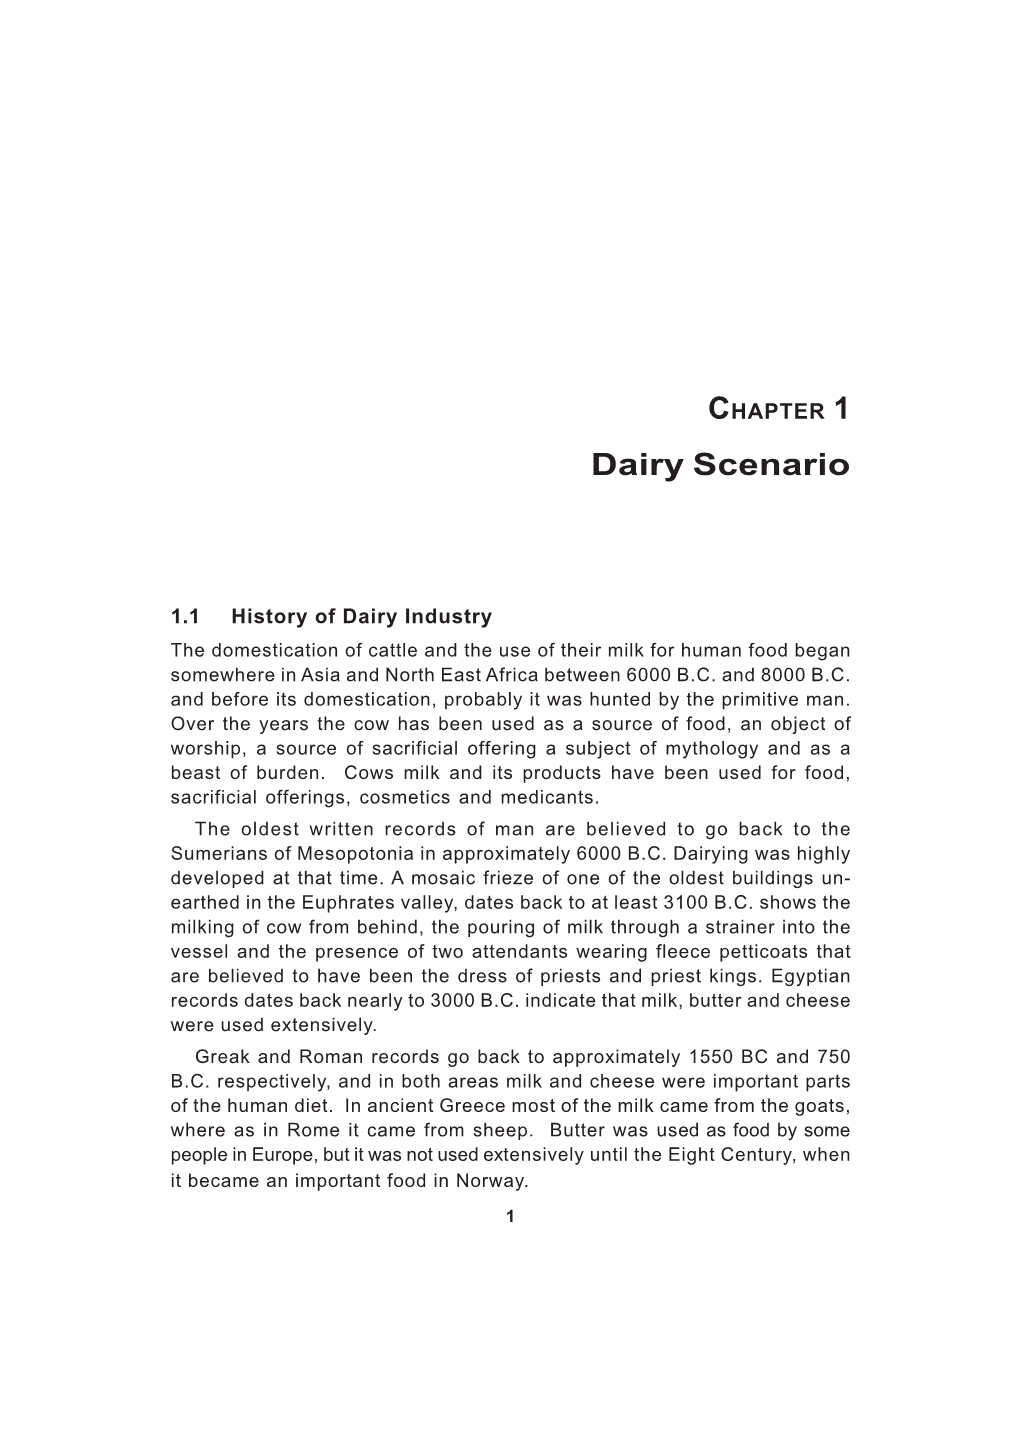 Dairy Scenario 1